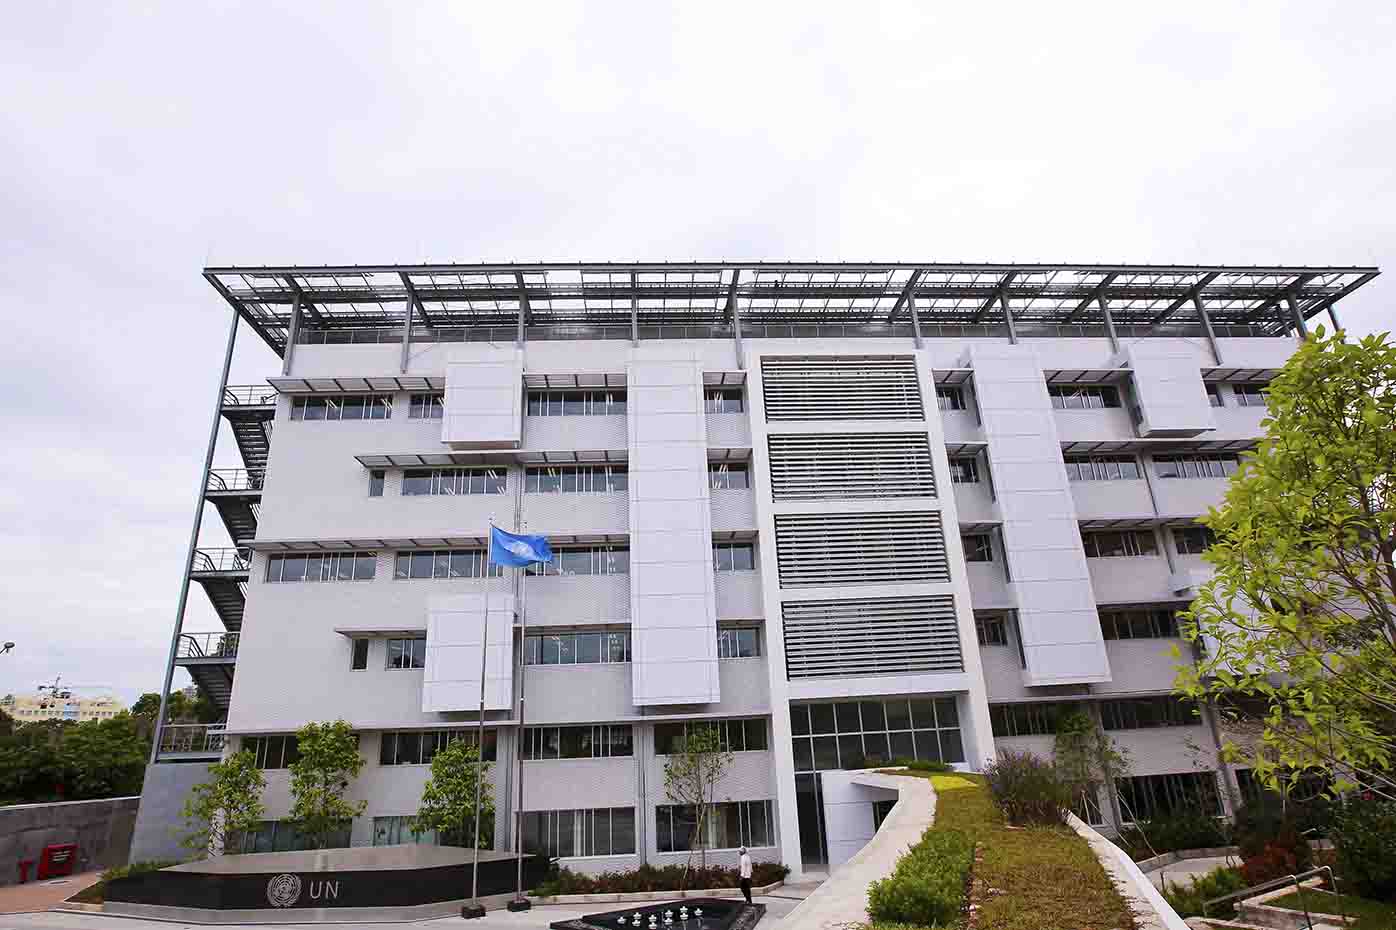 Ngôi nhà Xanh LHQ nhận chứng chỉ cao nhất công trình xanh tại Việt Nam